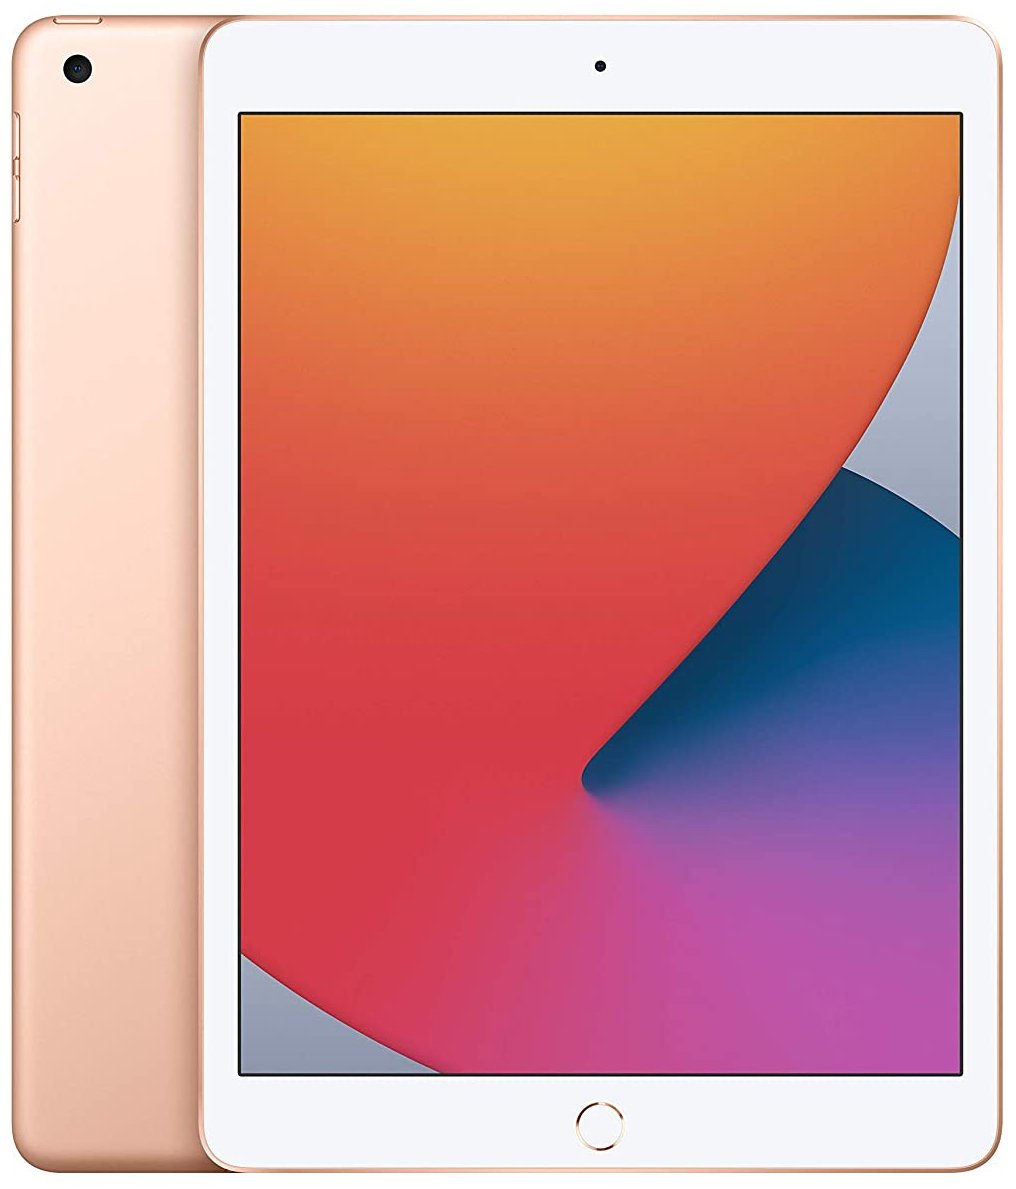 iPad 2020 in gold